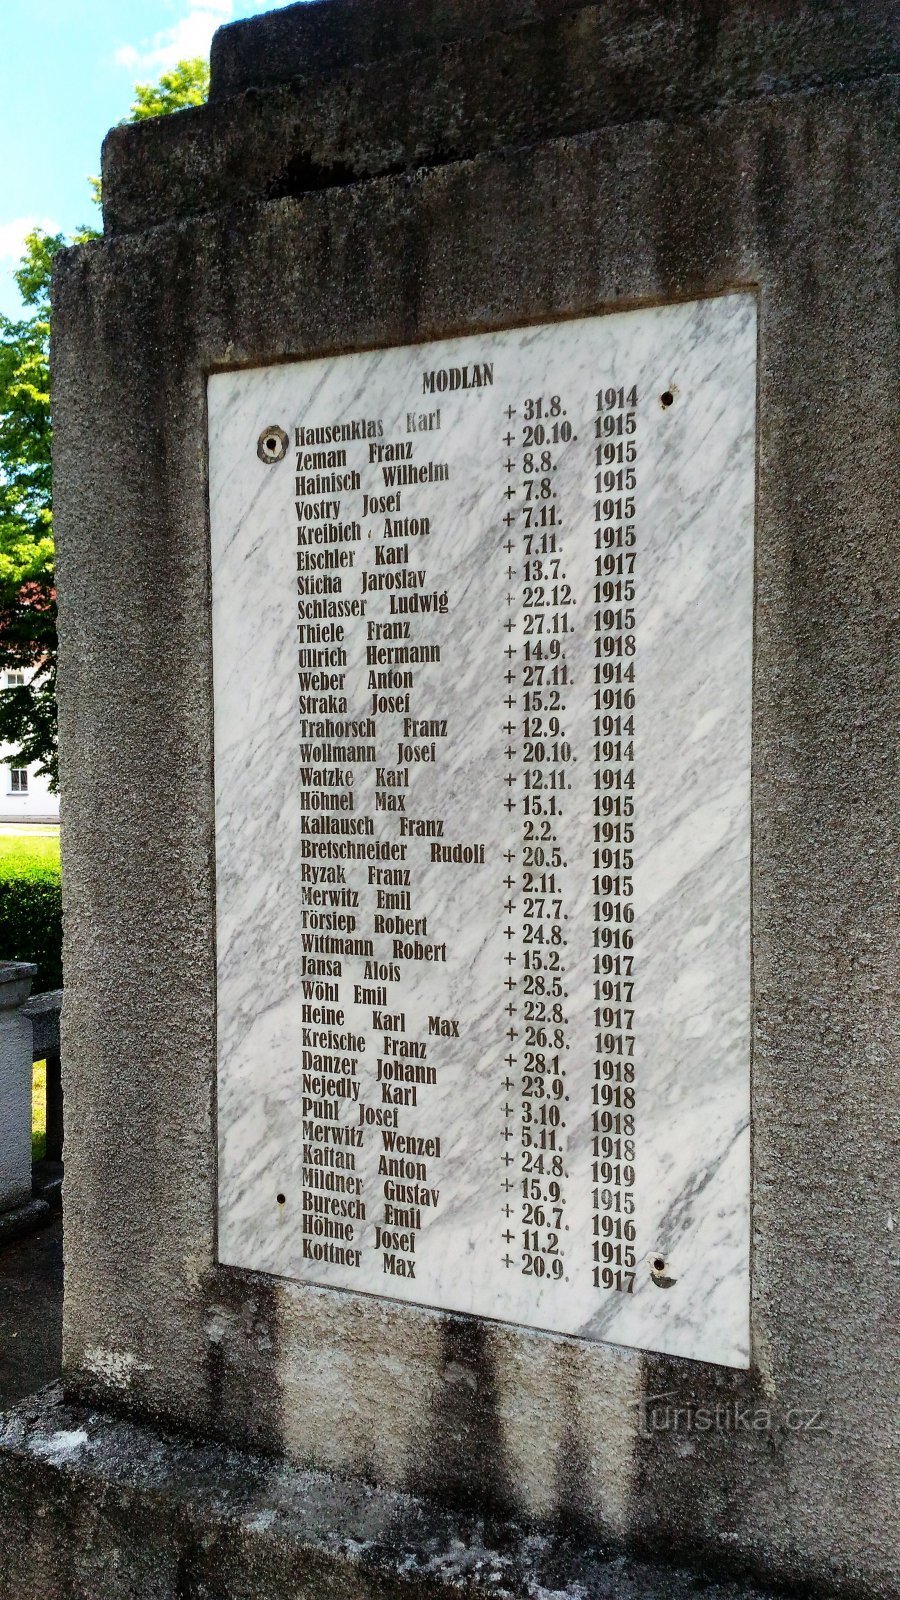 Monument voor de slachtoffers van de Eerste Wereldoorlog in Modlany